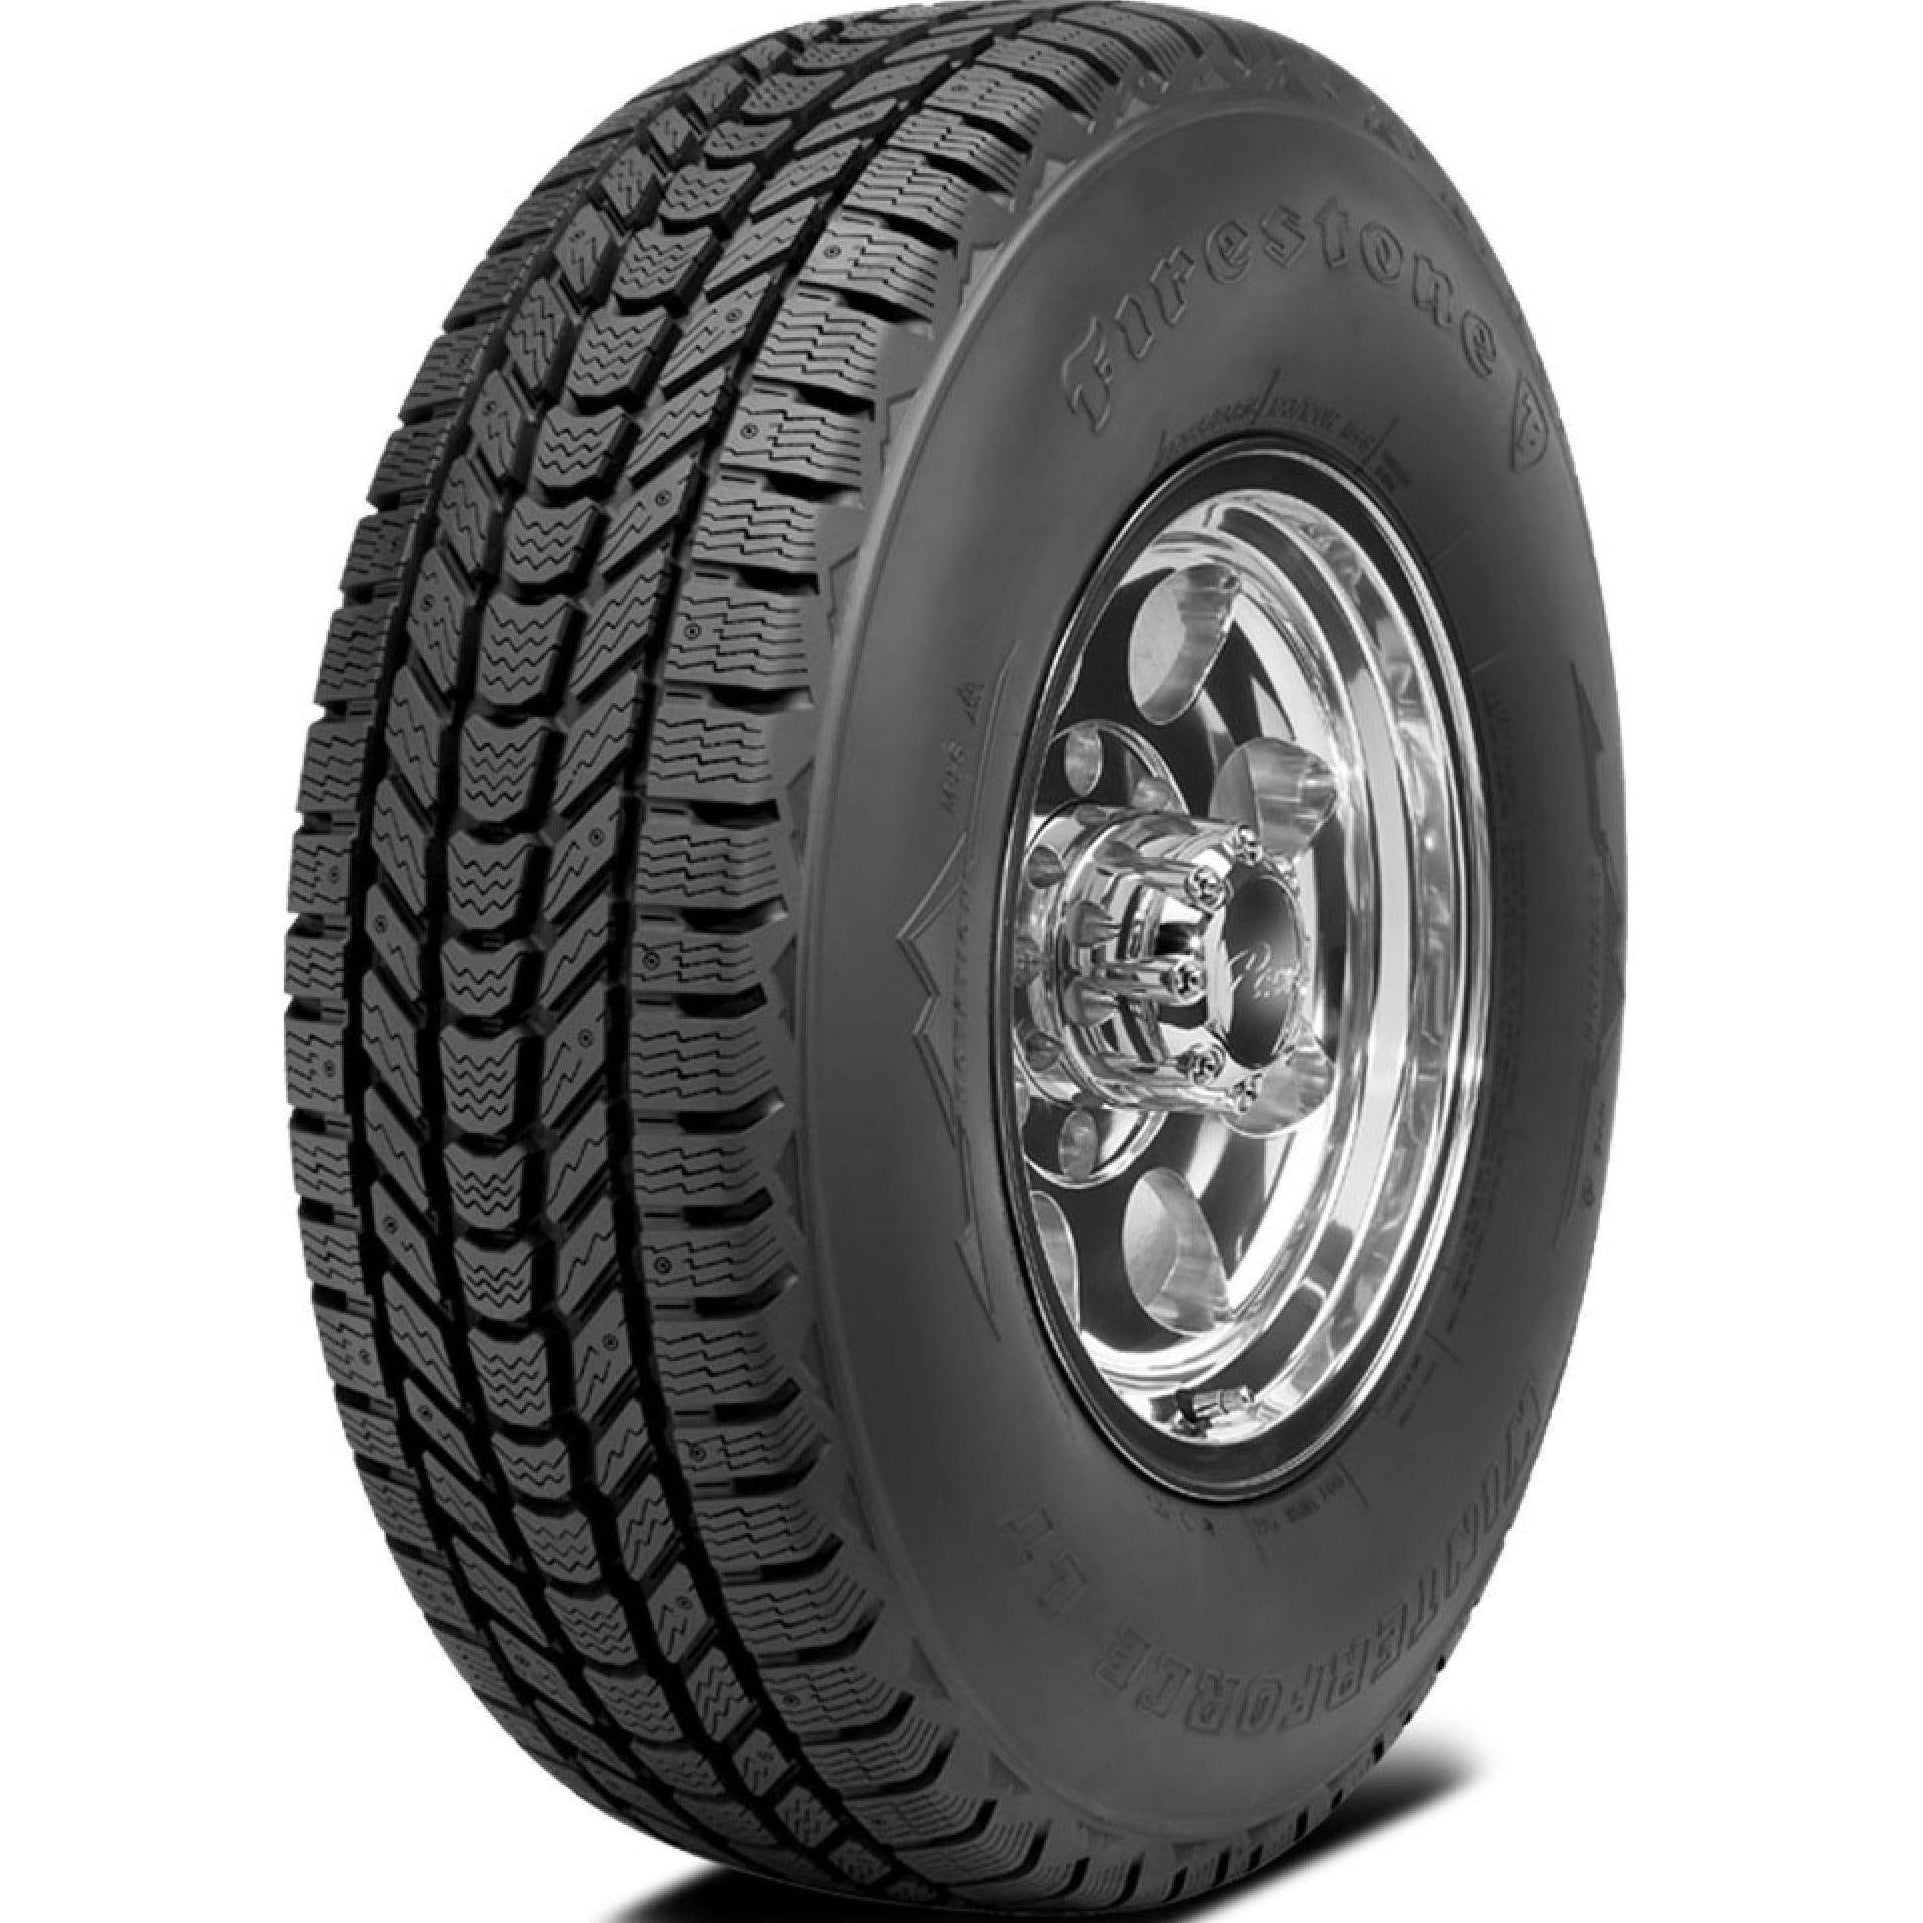 FIRESTONE WINTERFORCE LT LT245/70R17 (30.6X9.7R 17) Tires